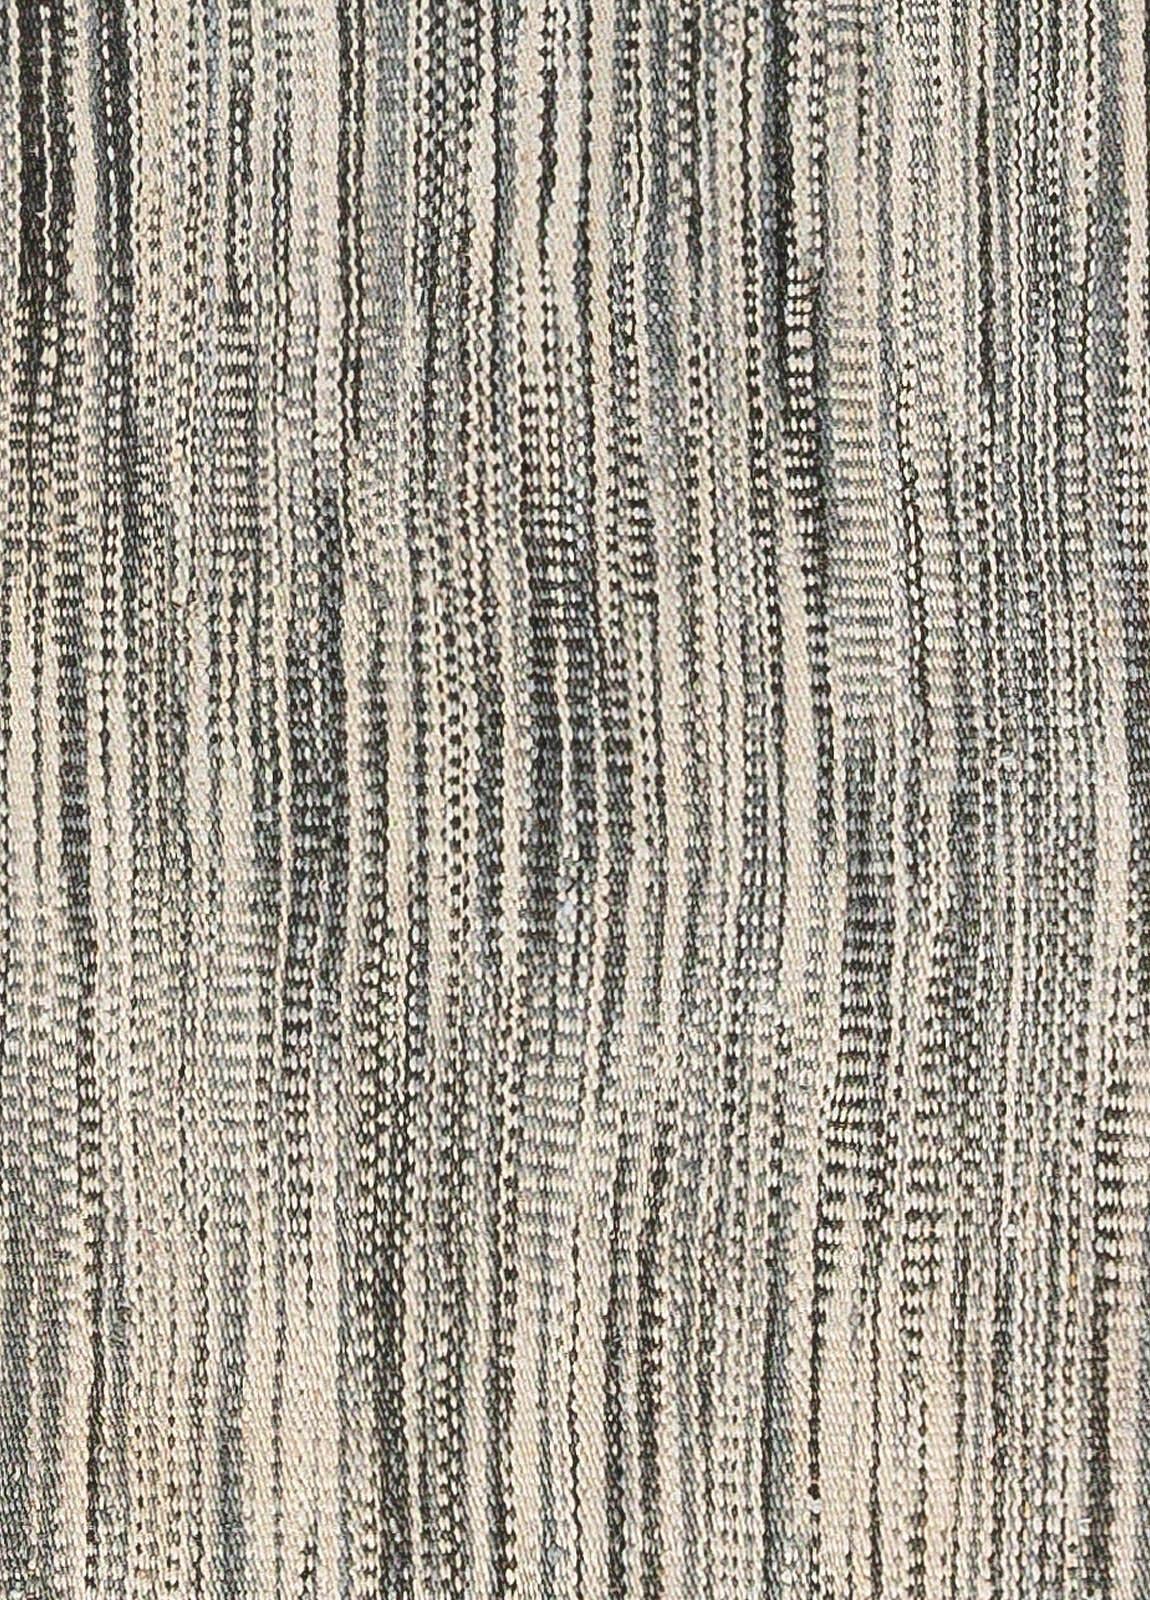 Modern flatweave Hemp rug by Doris Leslie Blau.
Size: 8'0